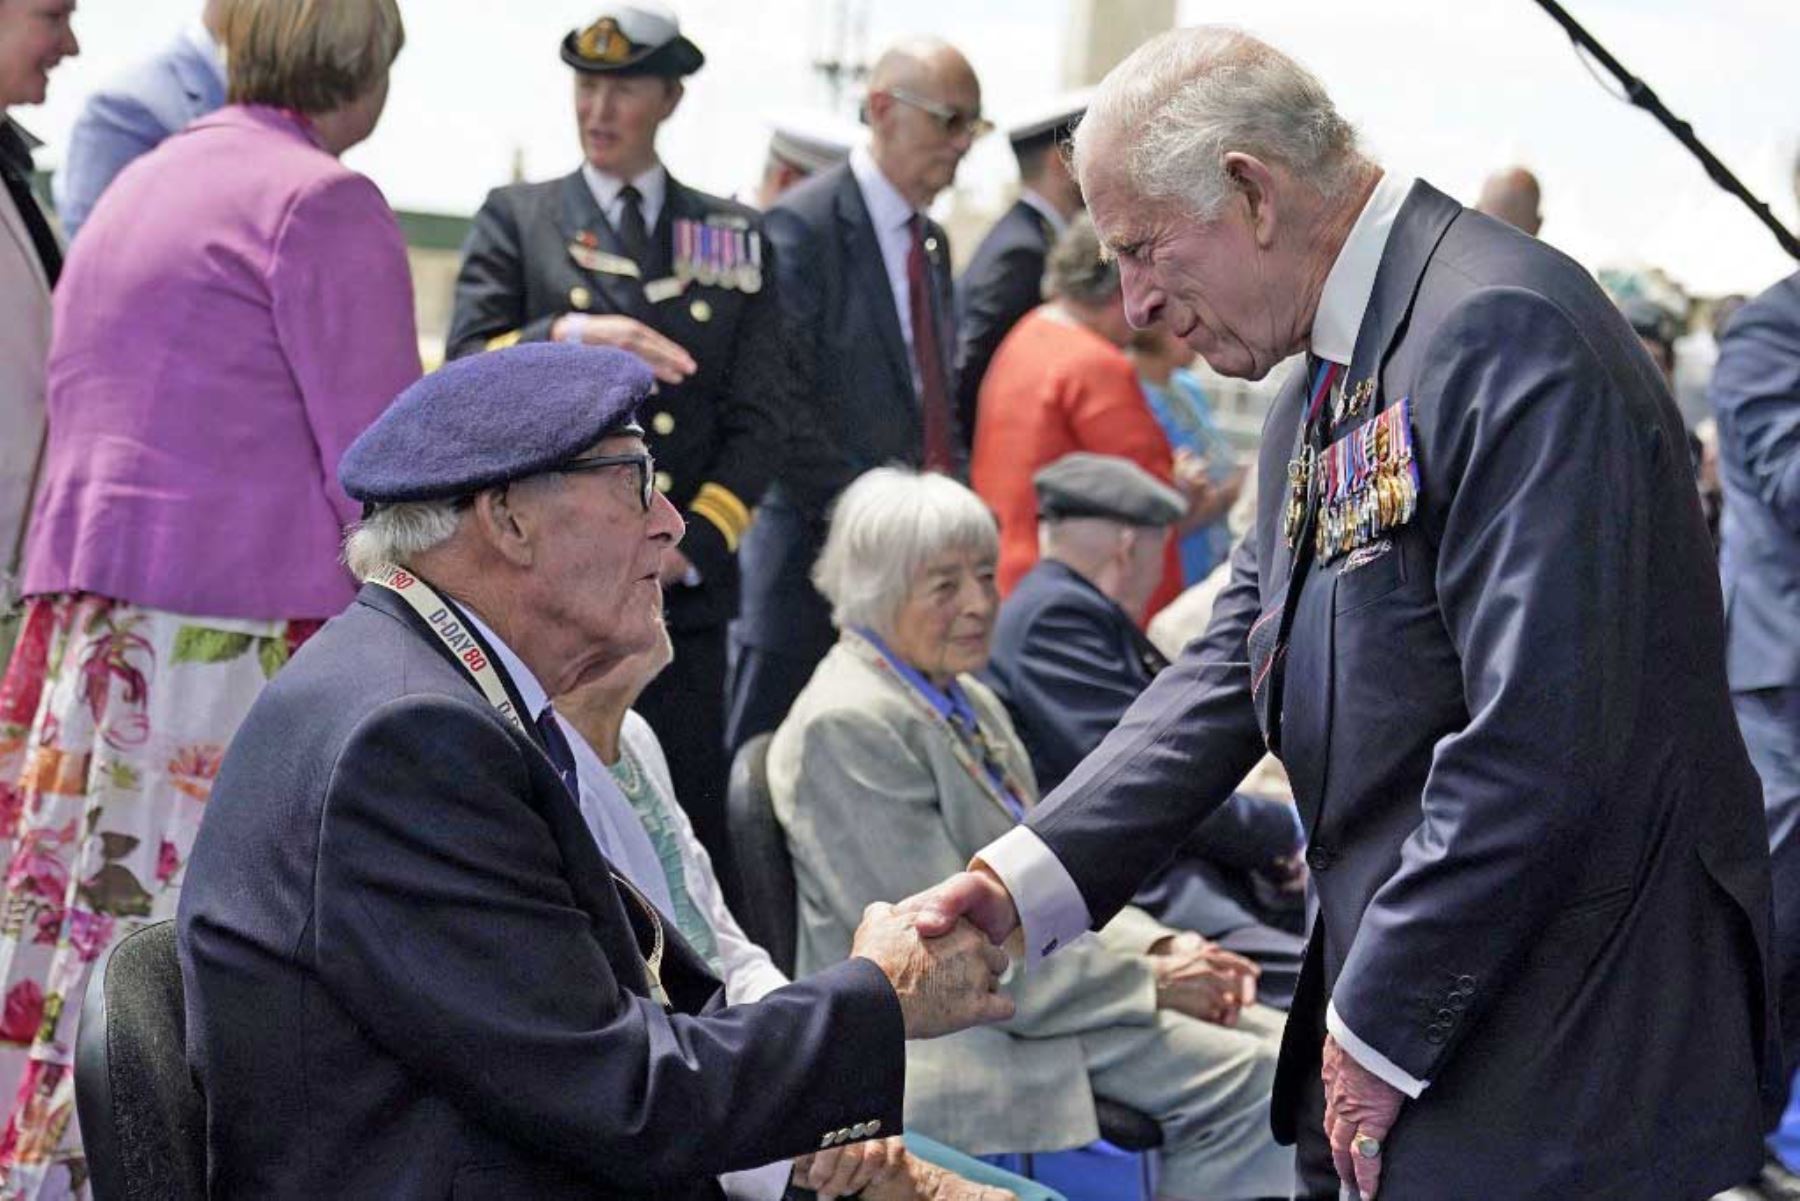 El rey Carlos III de Gran Bretaña conversa con el veterano del Día D Eric Bateman, tras el evento conmemorativo nacional del Reino Unido para conmemorar el 80º aniversario del desembarco anfibio aliado en Francia en 1944. Foto: AFP